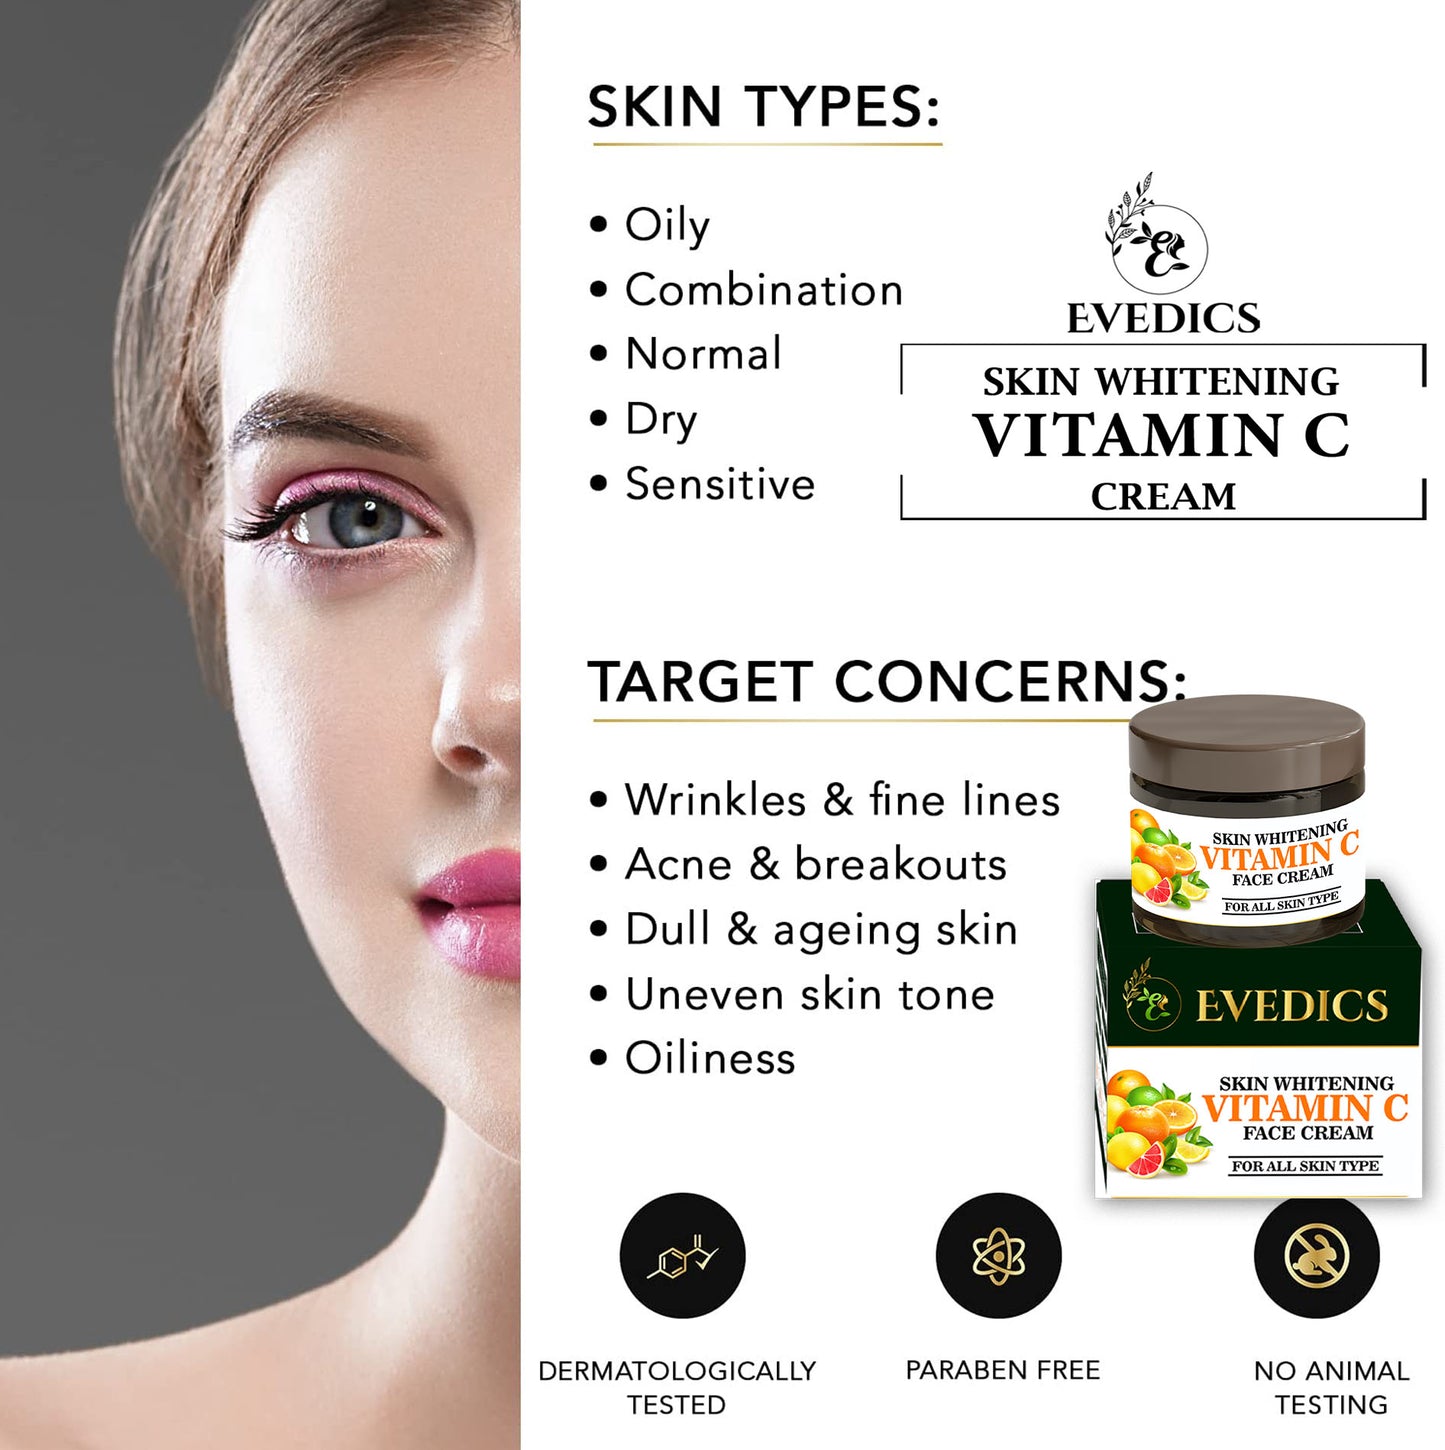 Evedics Vitamin C Skin Whitening Cream